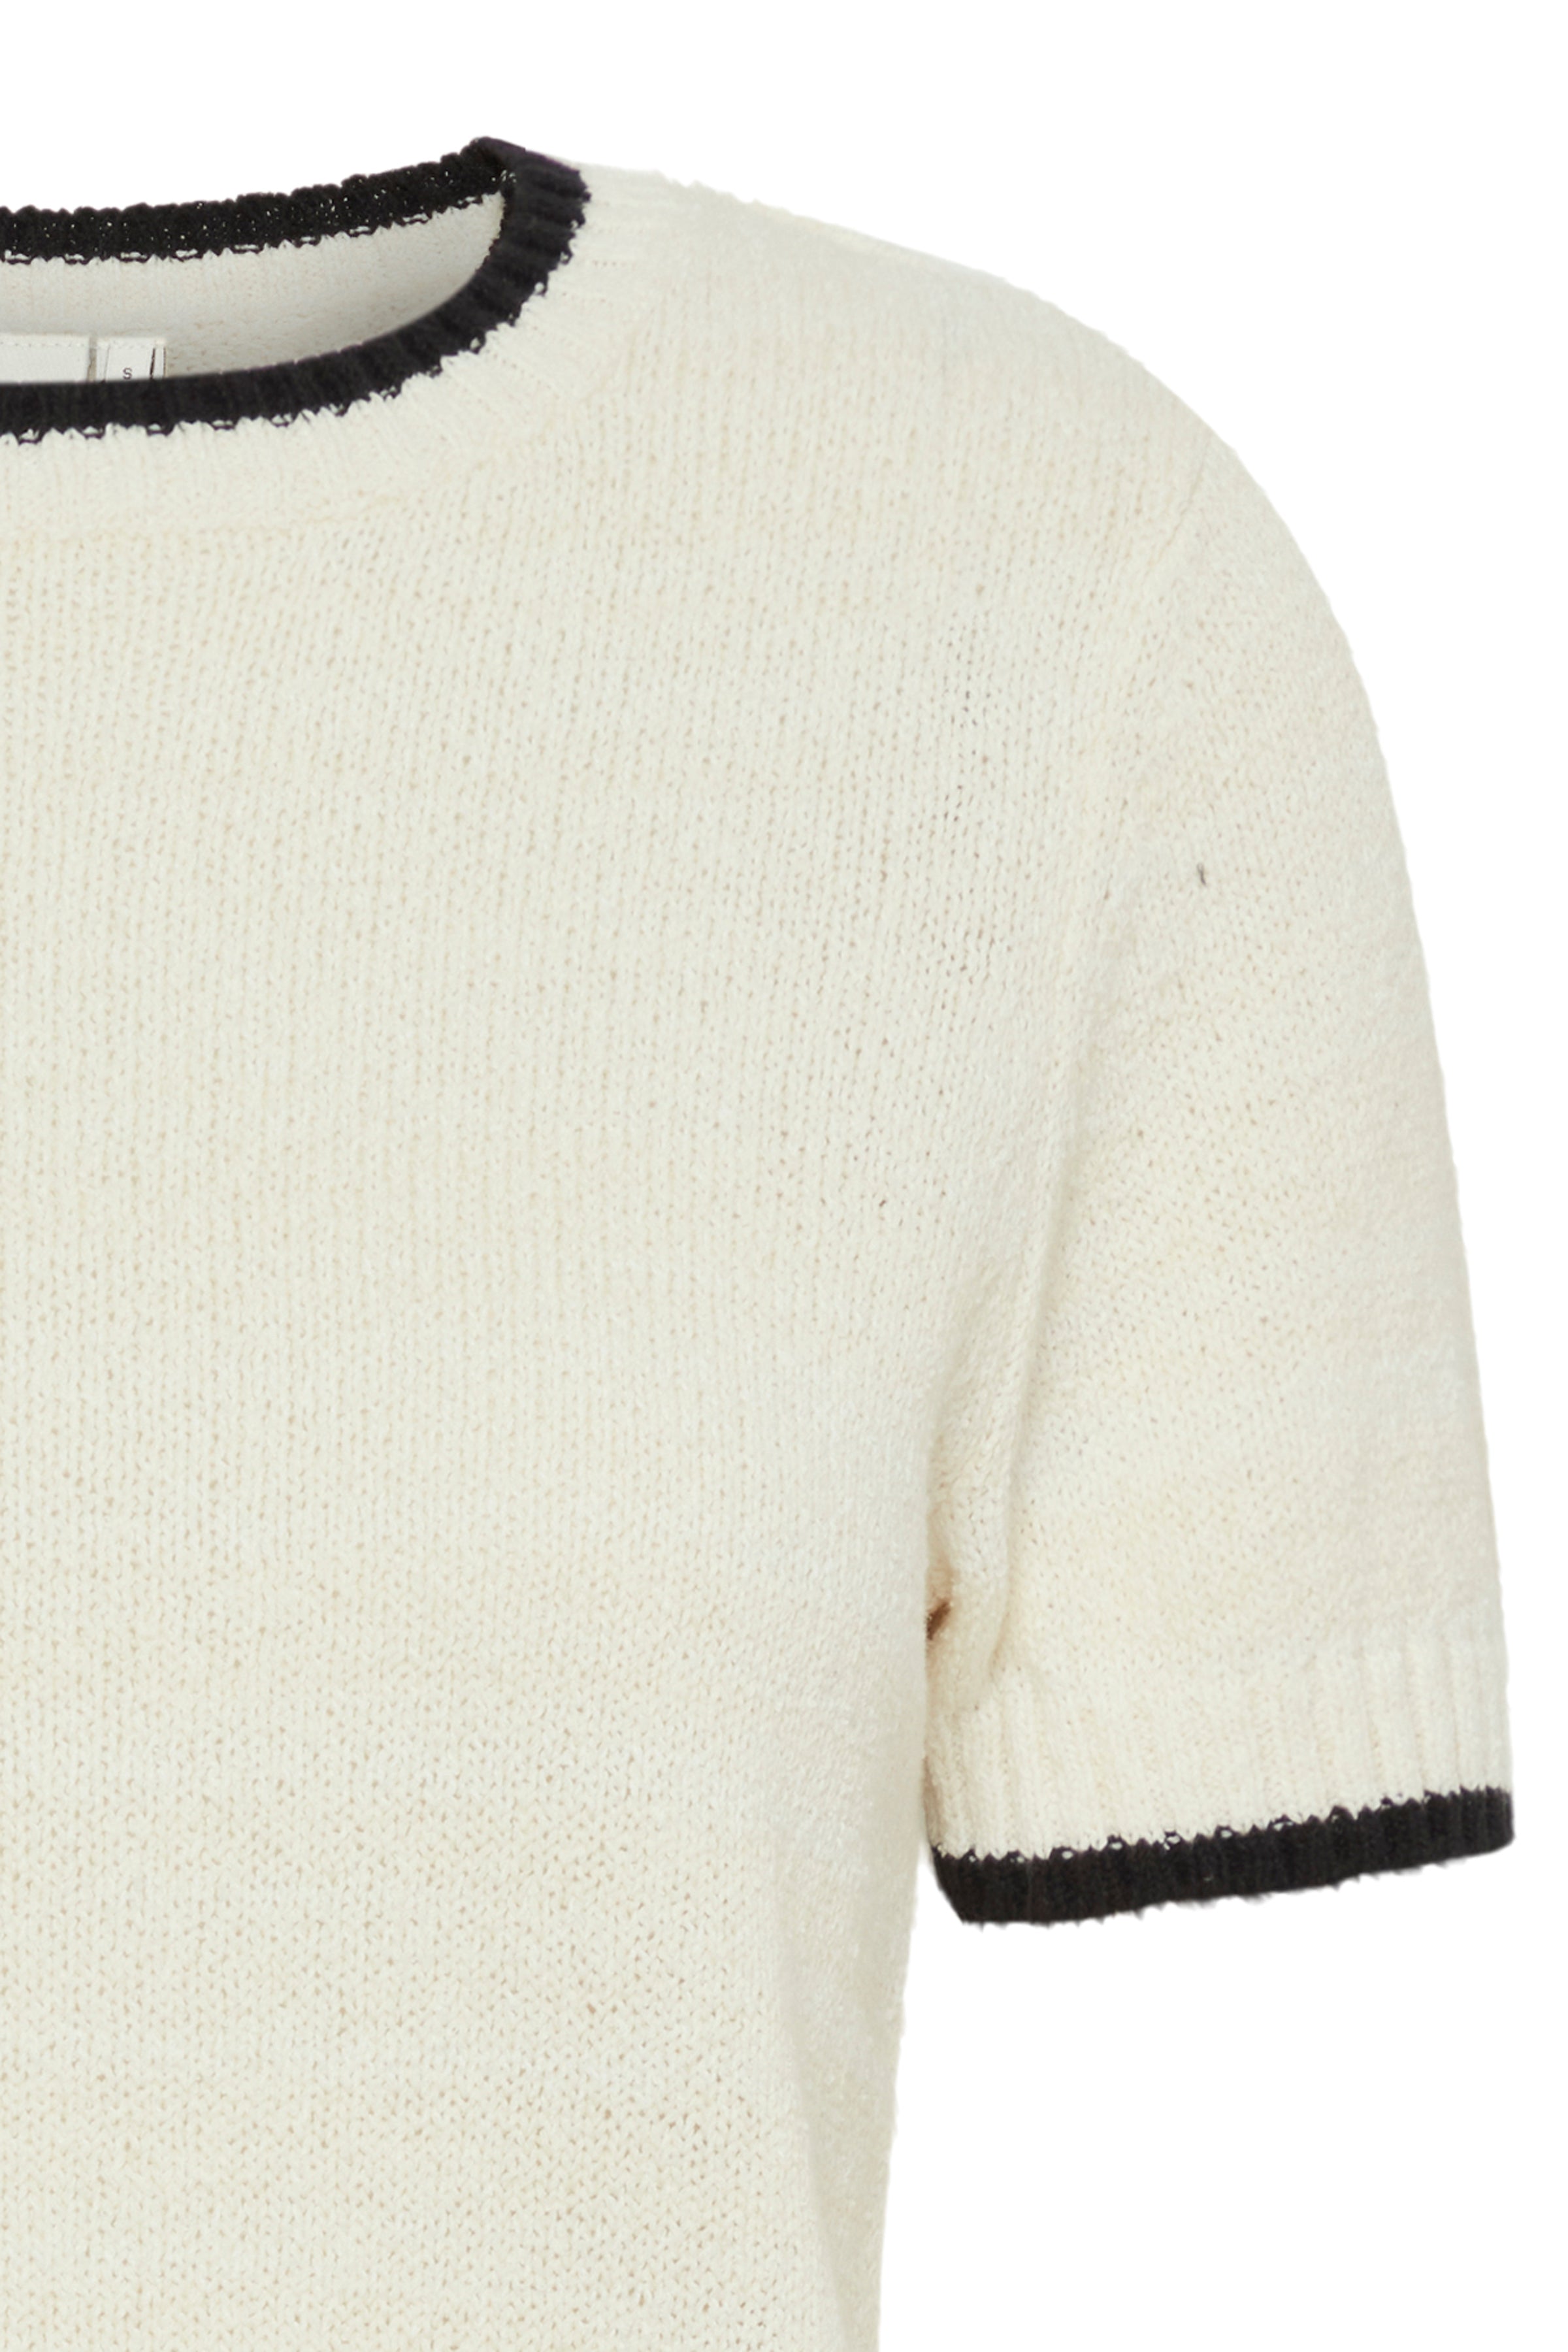 Ihaguste short sleeve knit | Ichi